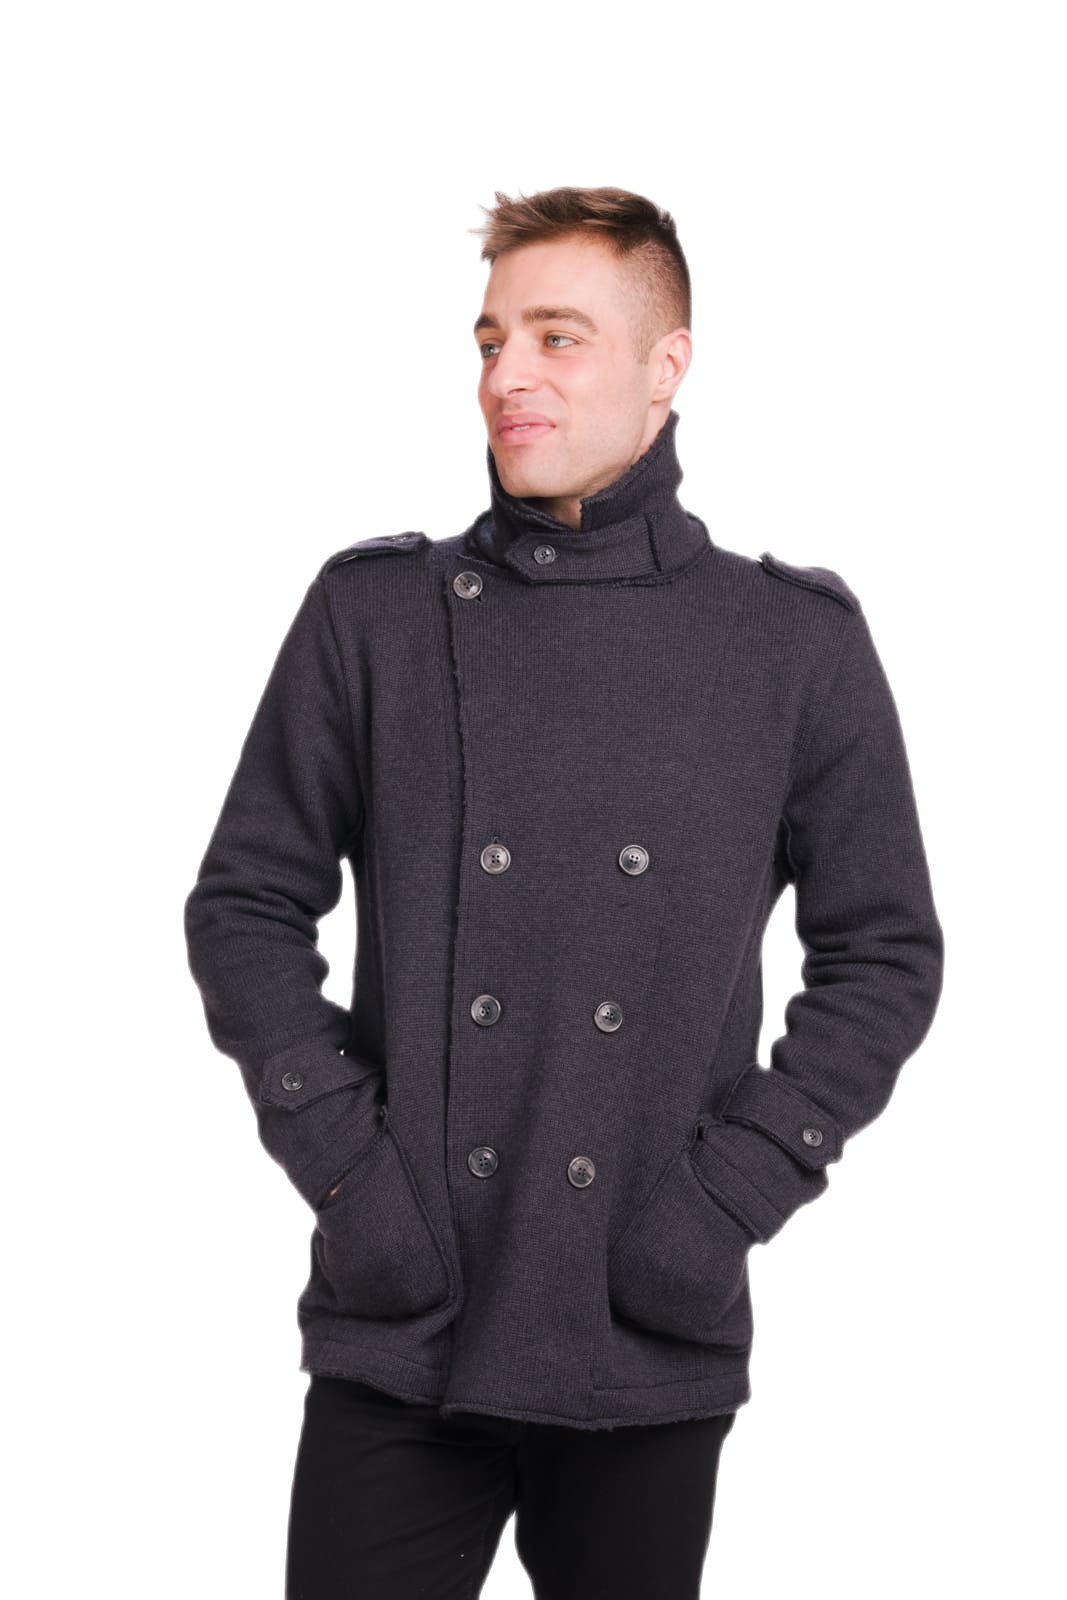 giacca doppiopetto uomo in pura lana vergine merino grigio antracite